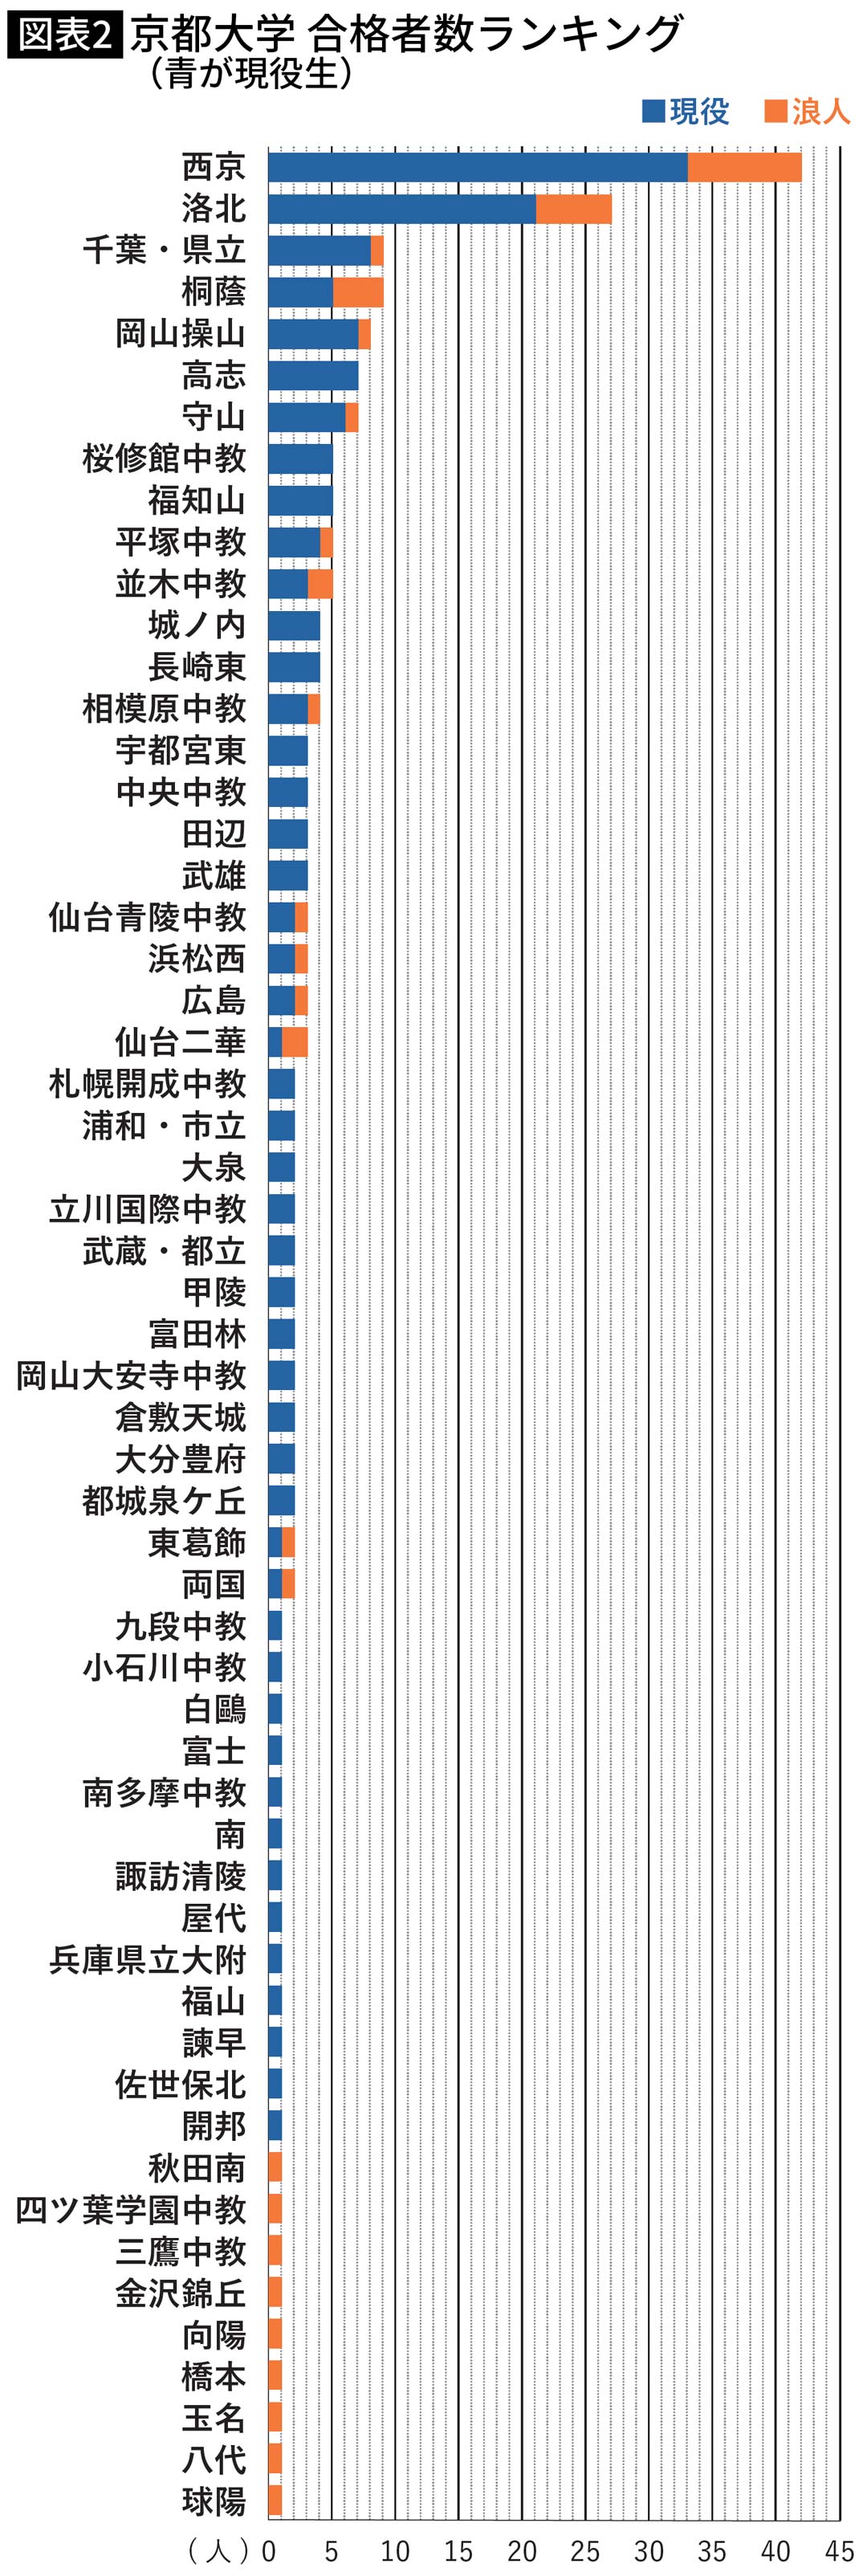 【図表】京都大学 合格者数ランキング（青が現役生）